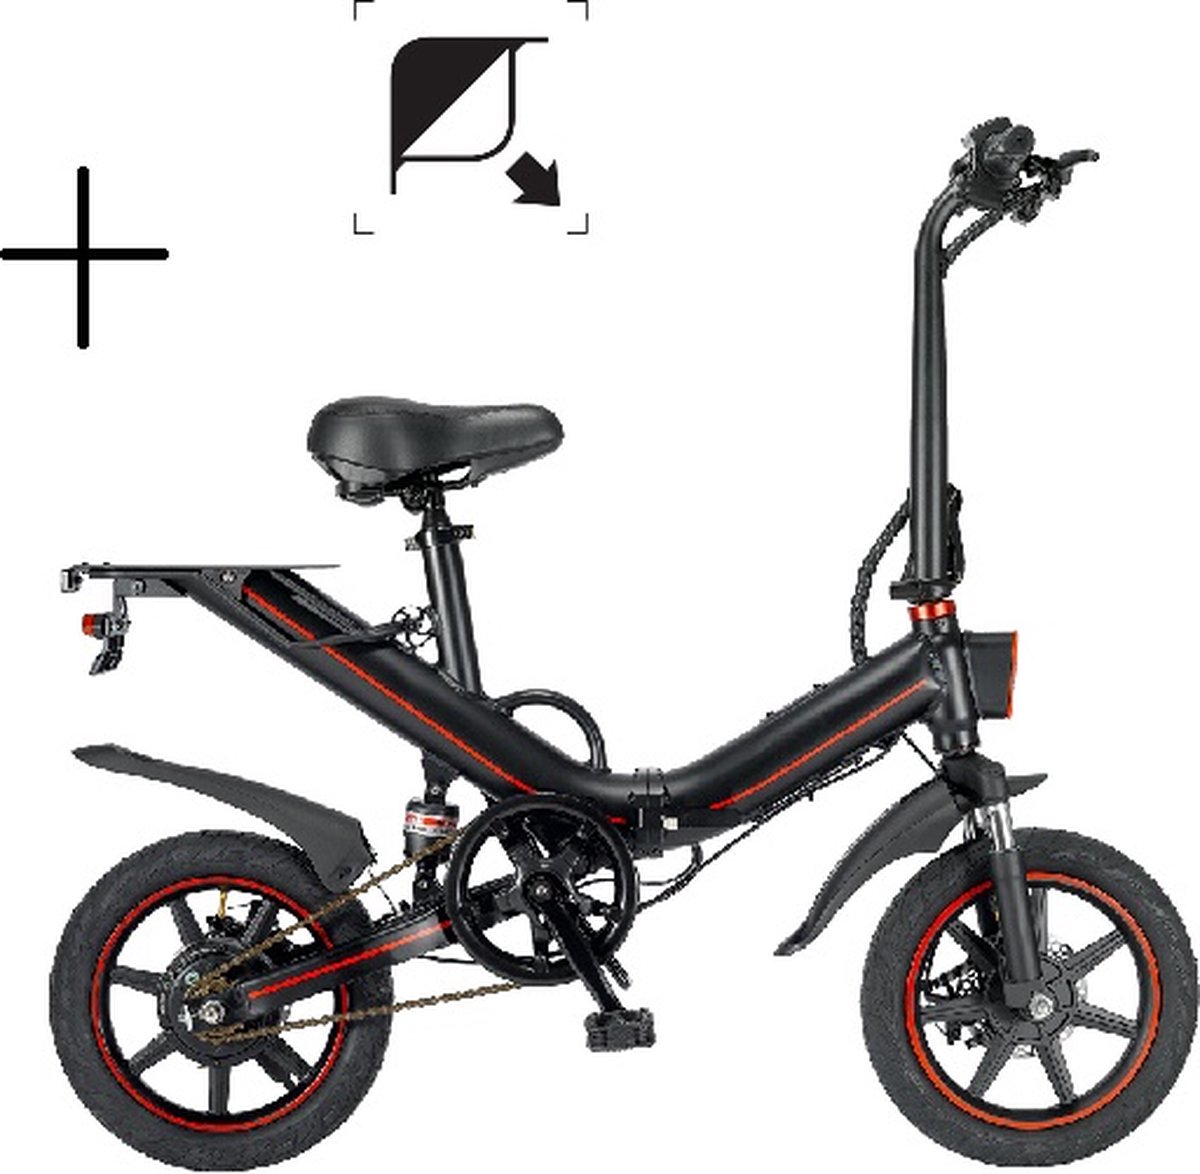 Ouxi V5 | elektrische vouwfiets | V-vorm | zwart met rood | elektrische fiets | opvouwbaar | 400W | snelheid 35 km/h | actieradius 50/60 km